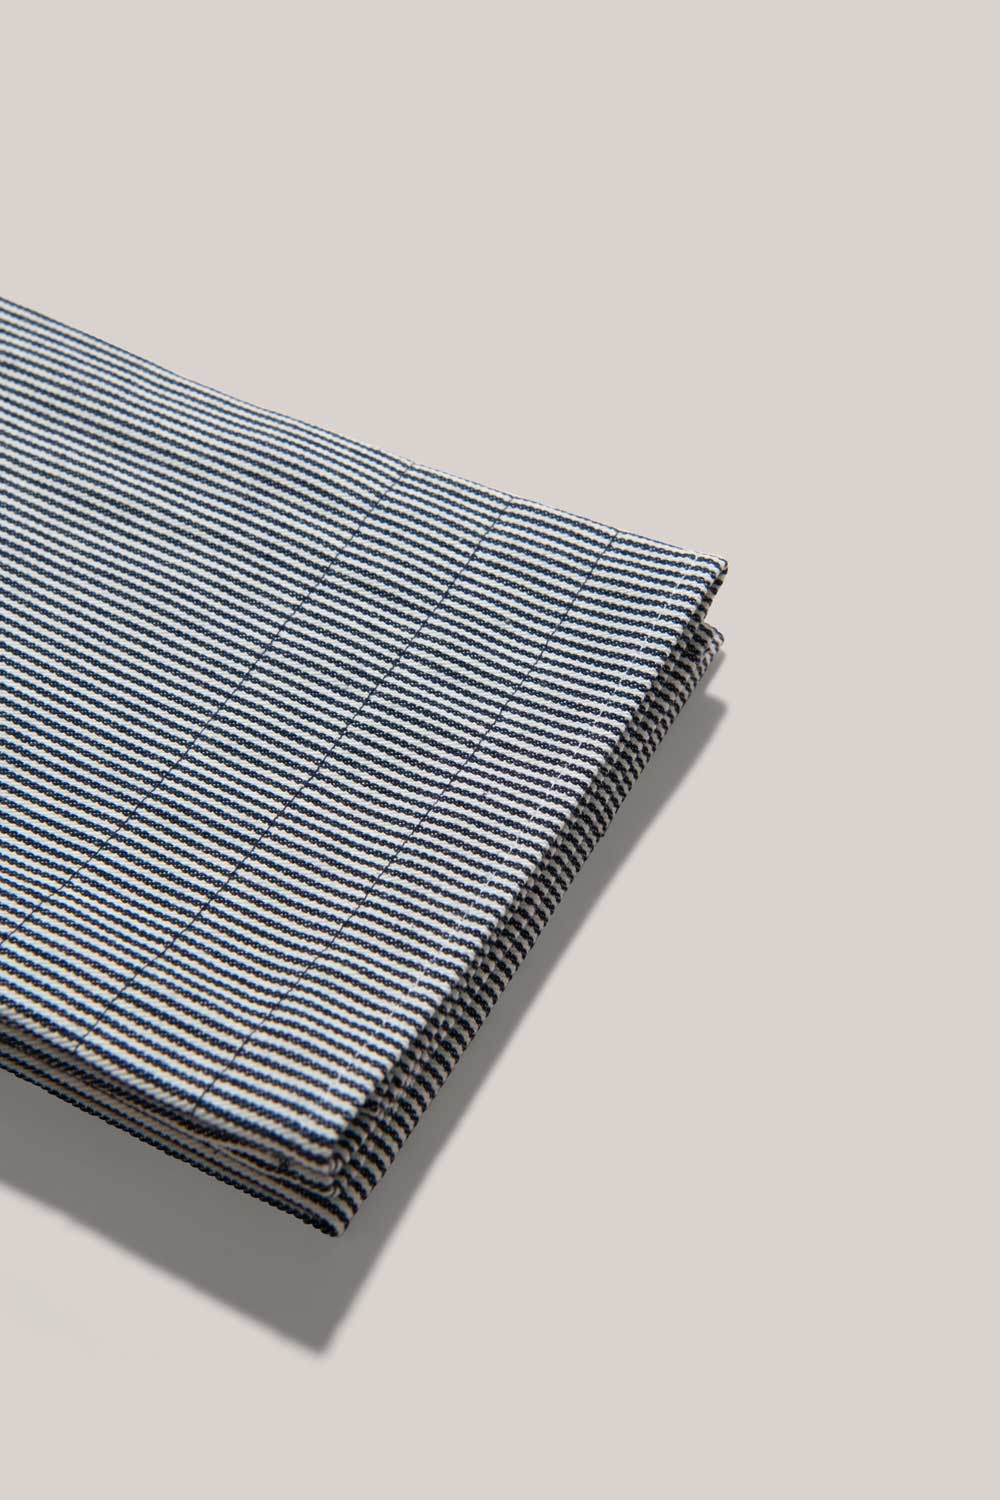 Hickory Stripe Tea Towels TEA TOWELS ATELIER SAUCIER - Atelier Saucier